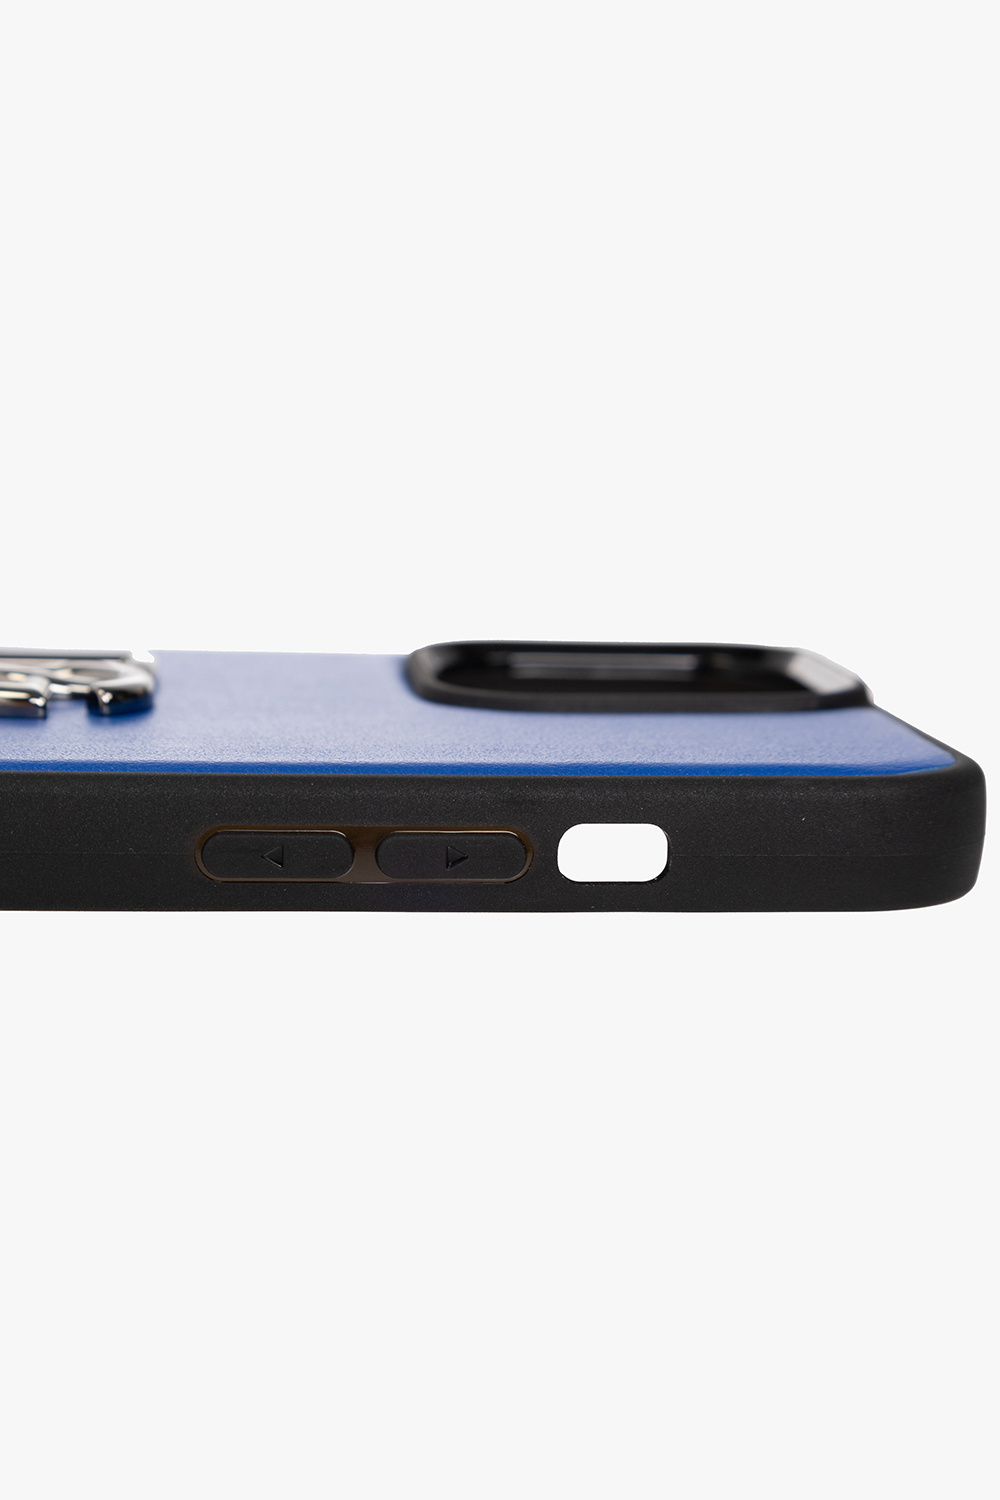 LV Blue Art iPhone 12 Case by DG Design - Pixels